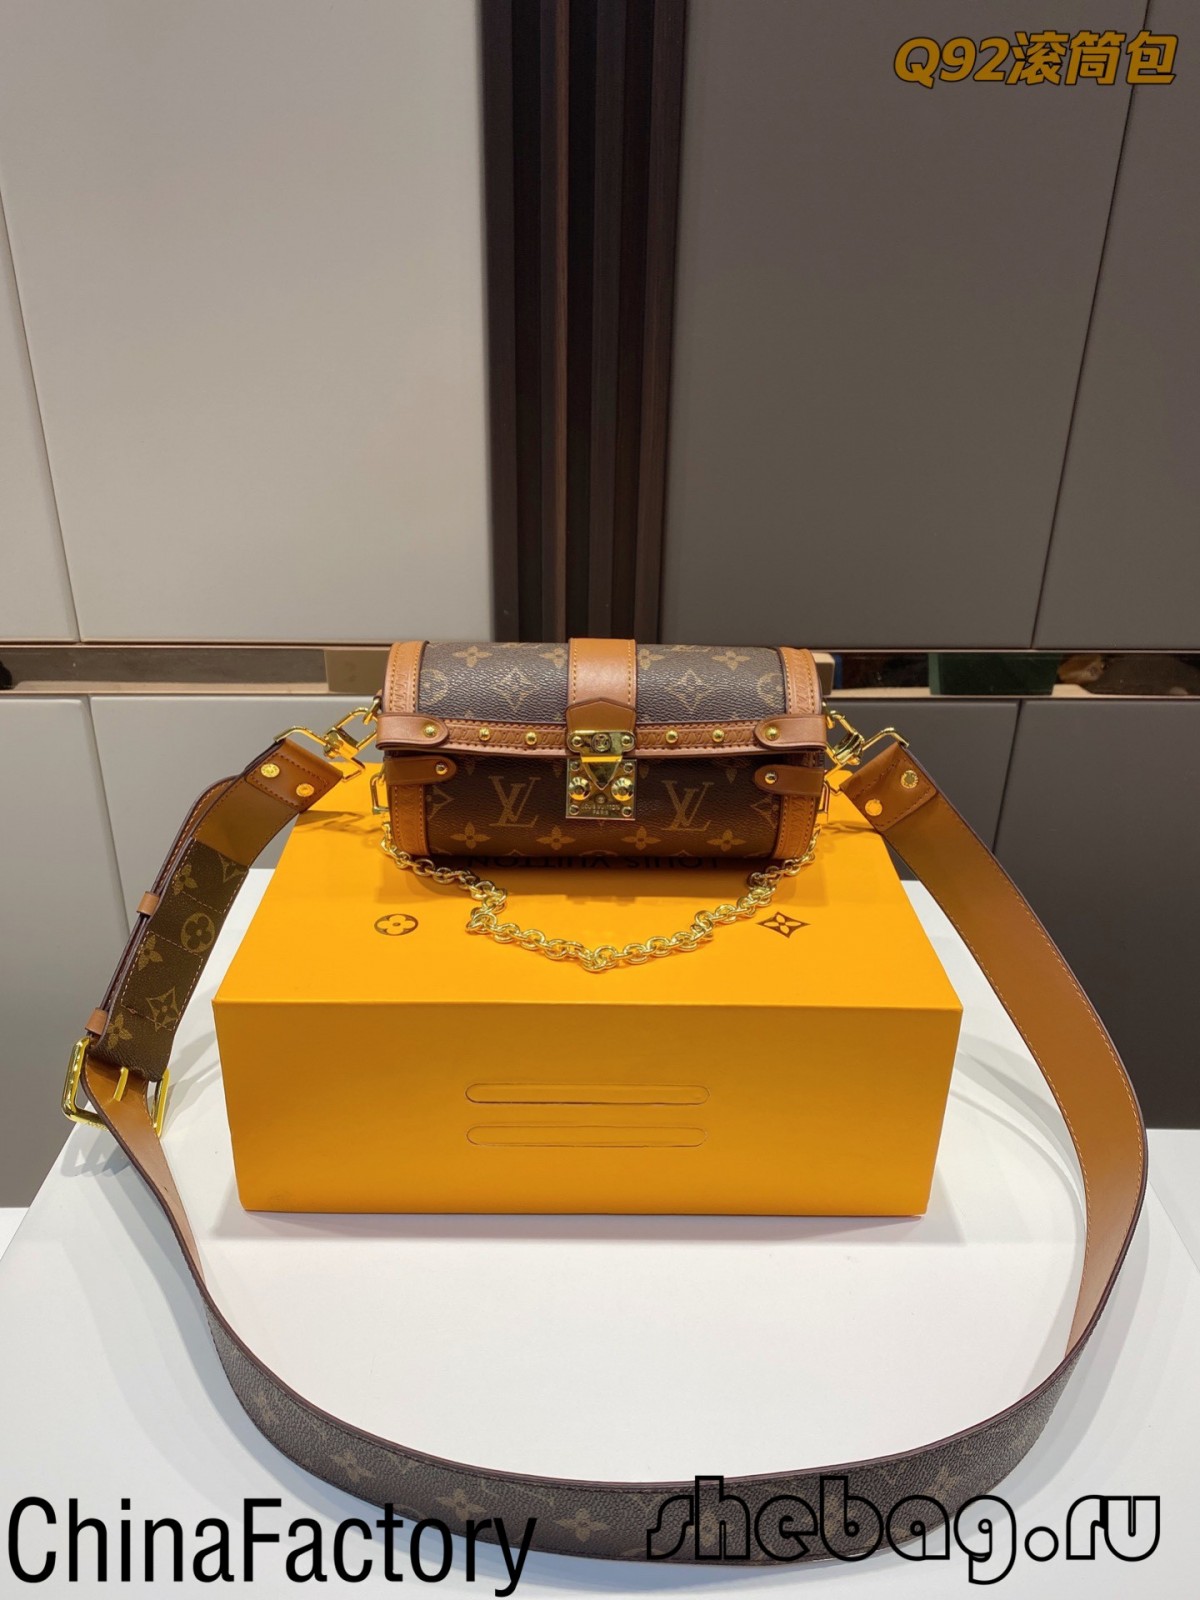 Najwyższej jakości replika torby Louis Vuitton Fabryka w Chinach: Trunk LV Papillon (2022 Najgorętsze) - Najlepsza jakość fałszywe torebki Louis Vuitton Sklep internetowy, projektant repliki torba ru